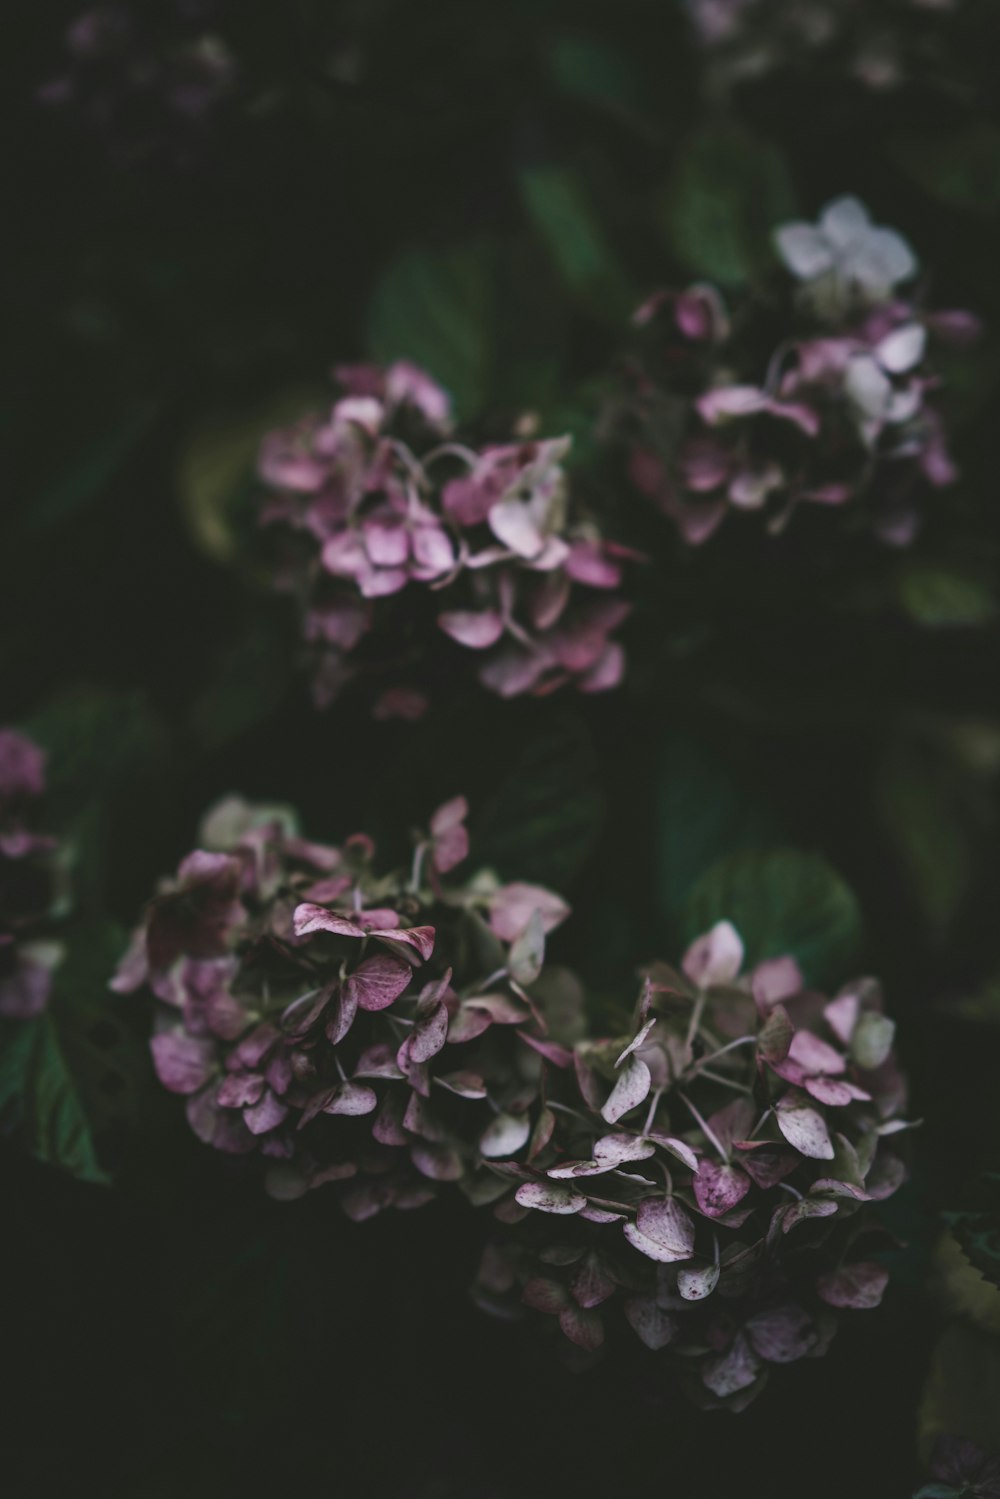 Photographie sélective de fleurs à pétales violets